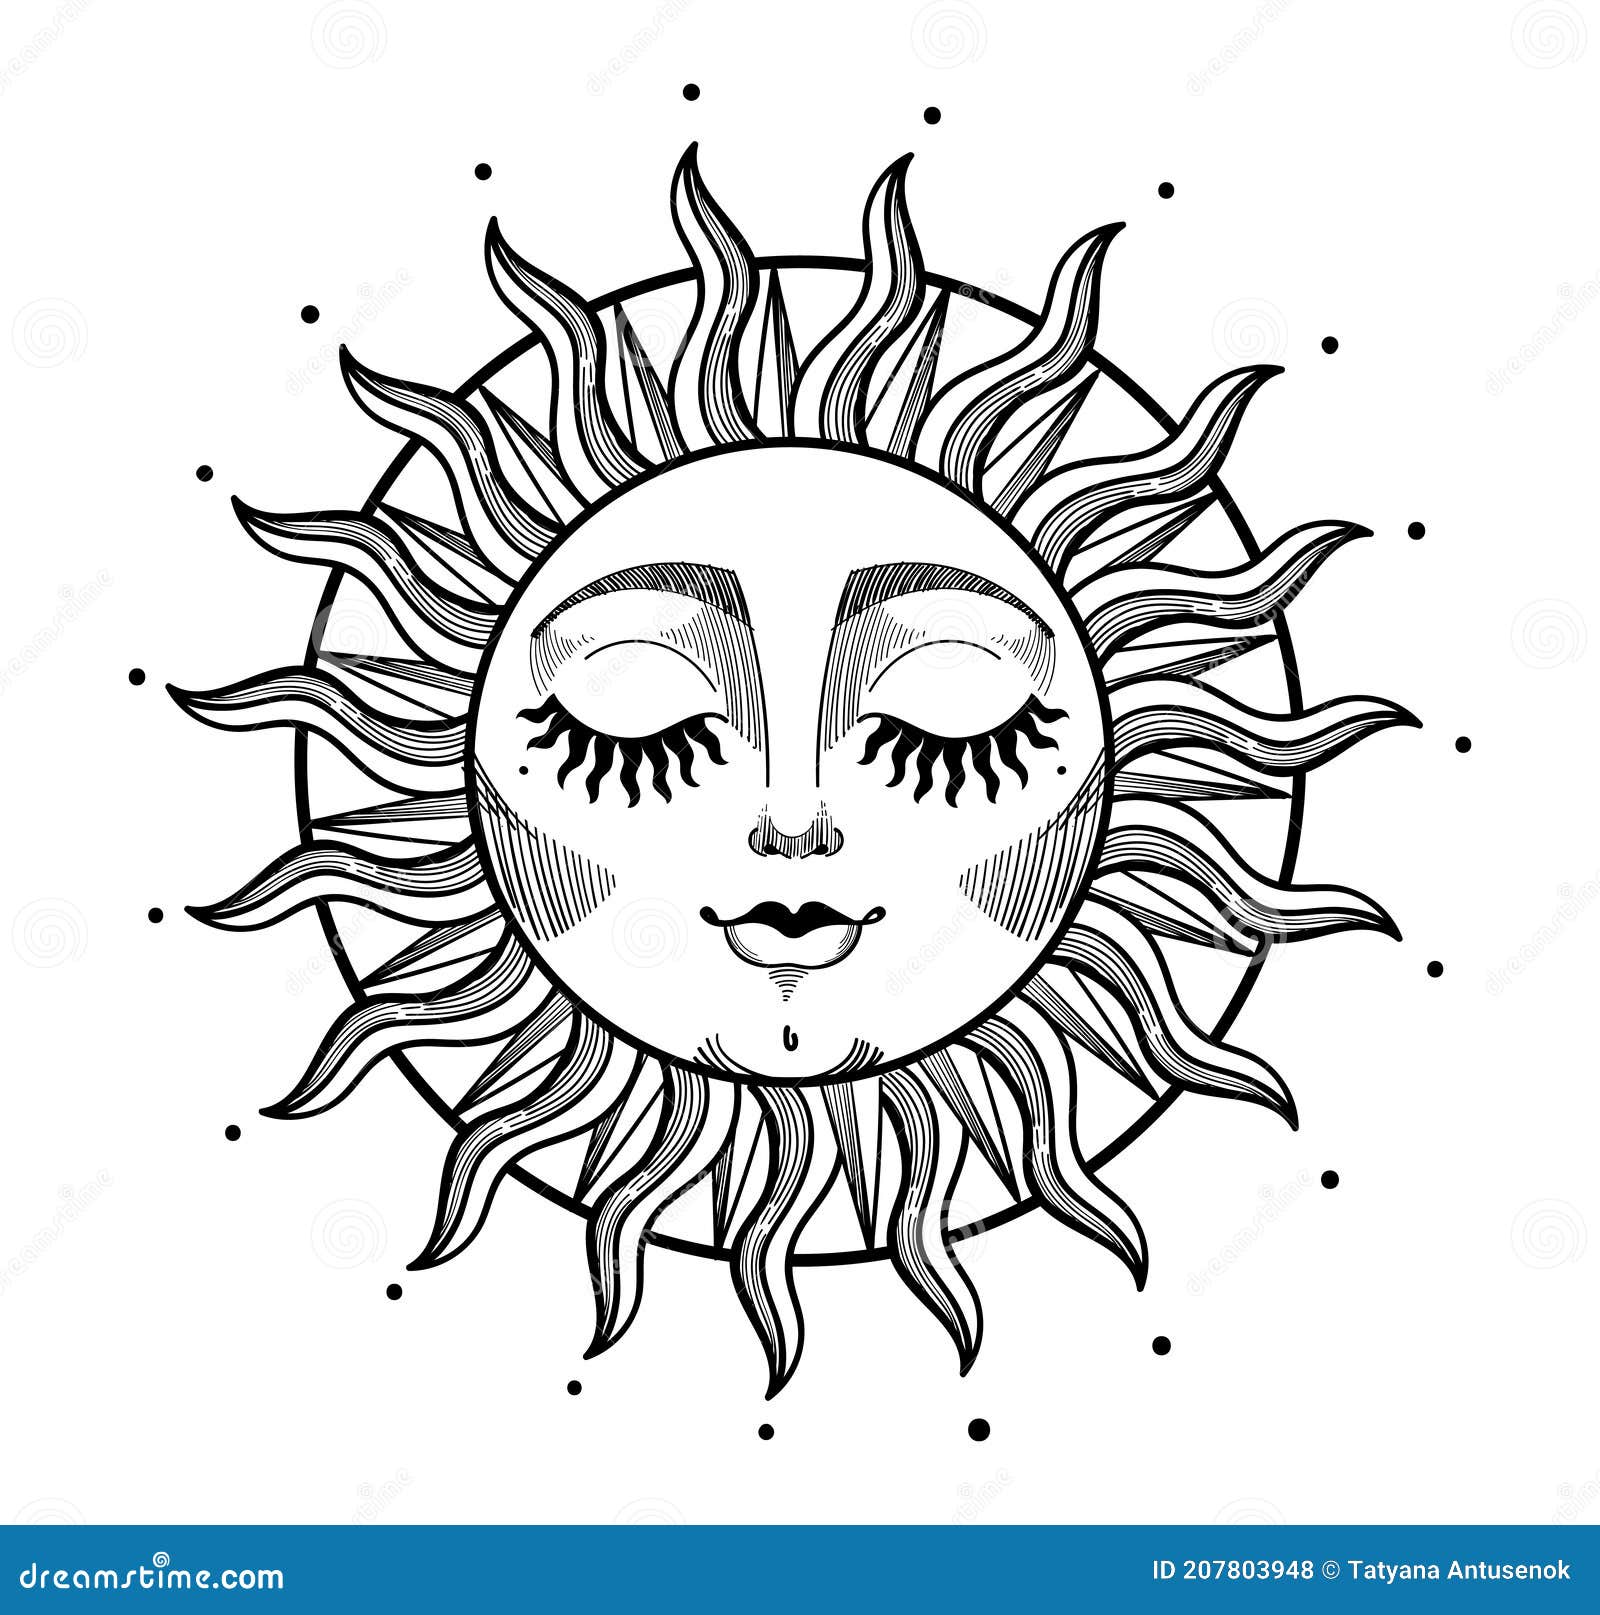 Sun Face Tattoo  Sun tattoo designs Sun tattoos Sun tattoo